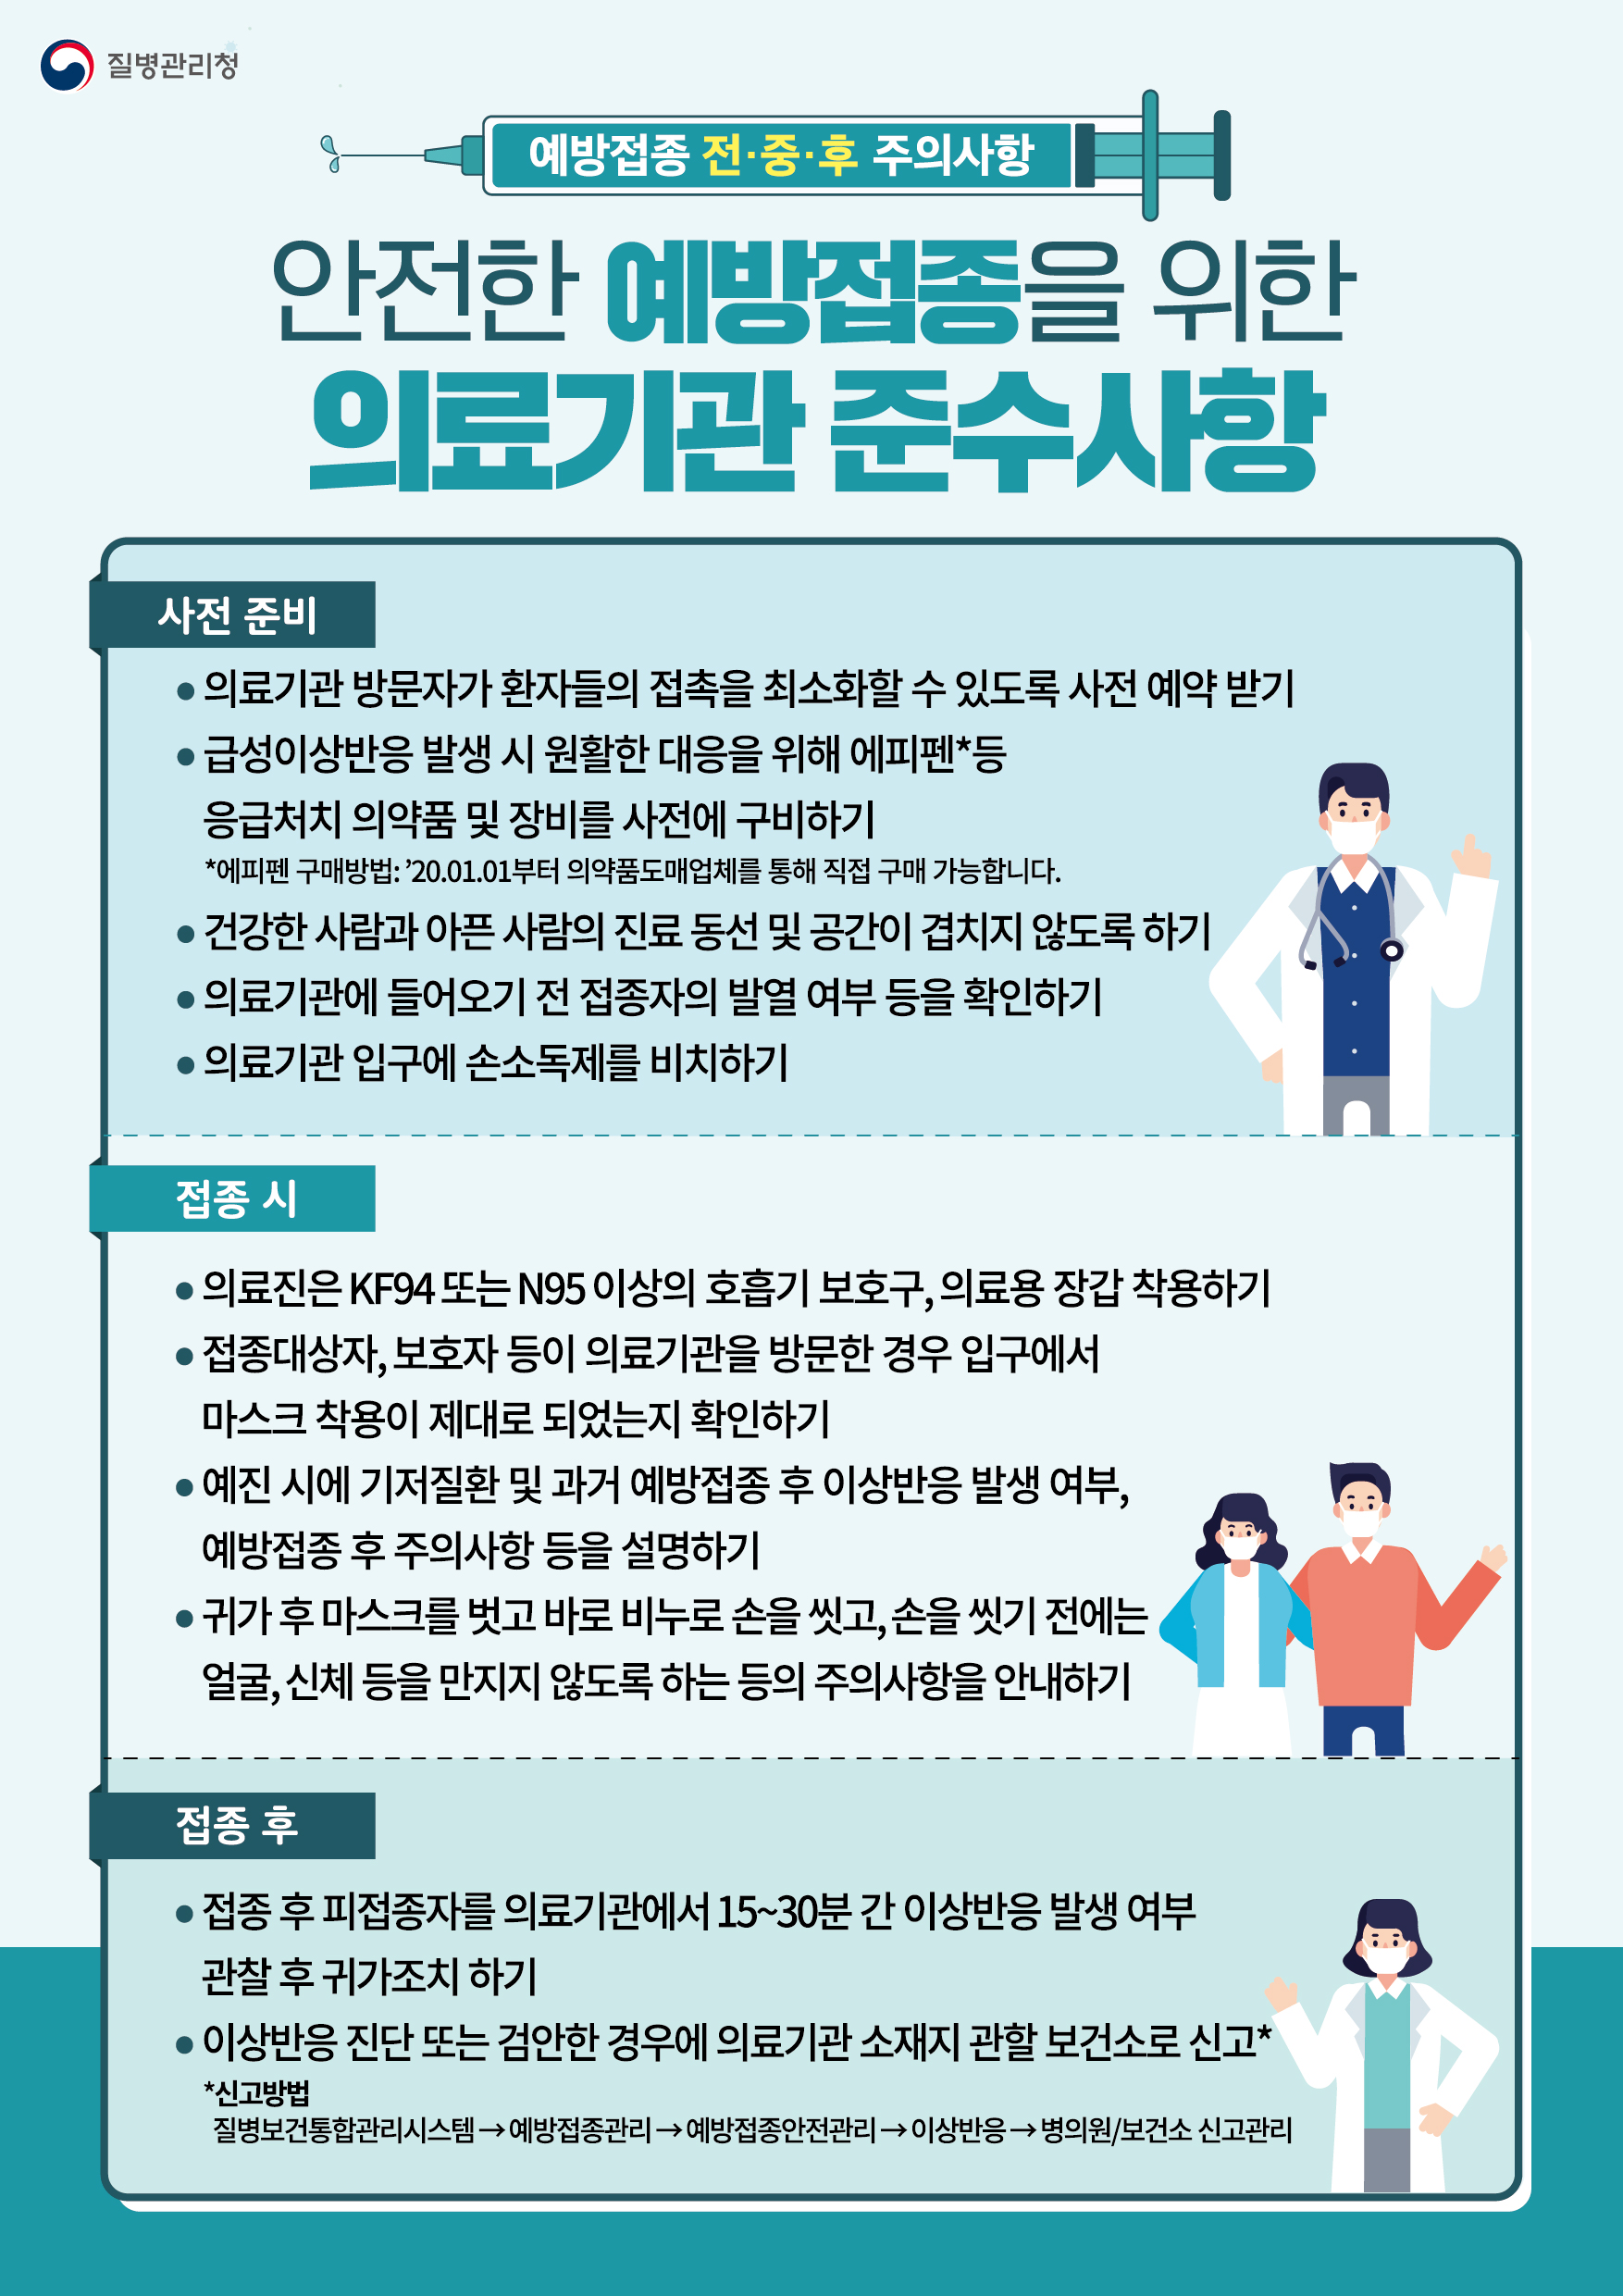 인플루엔자 예방접종 시 의료기관 준수사항 (썸네일)